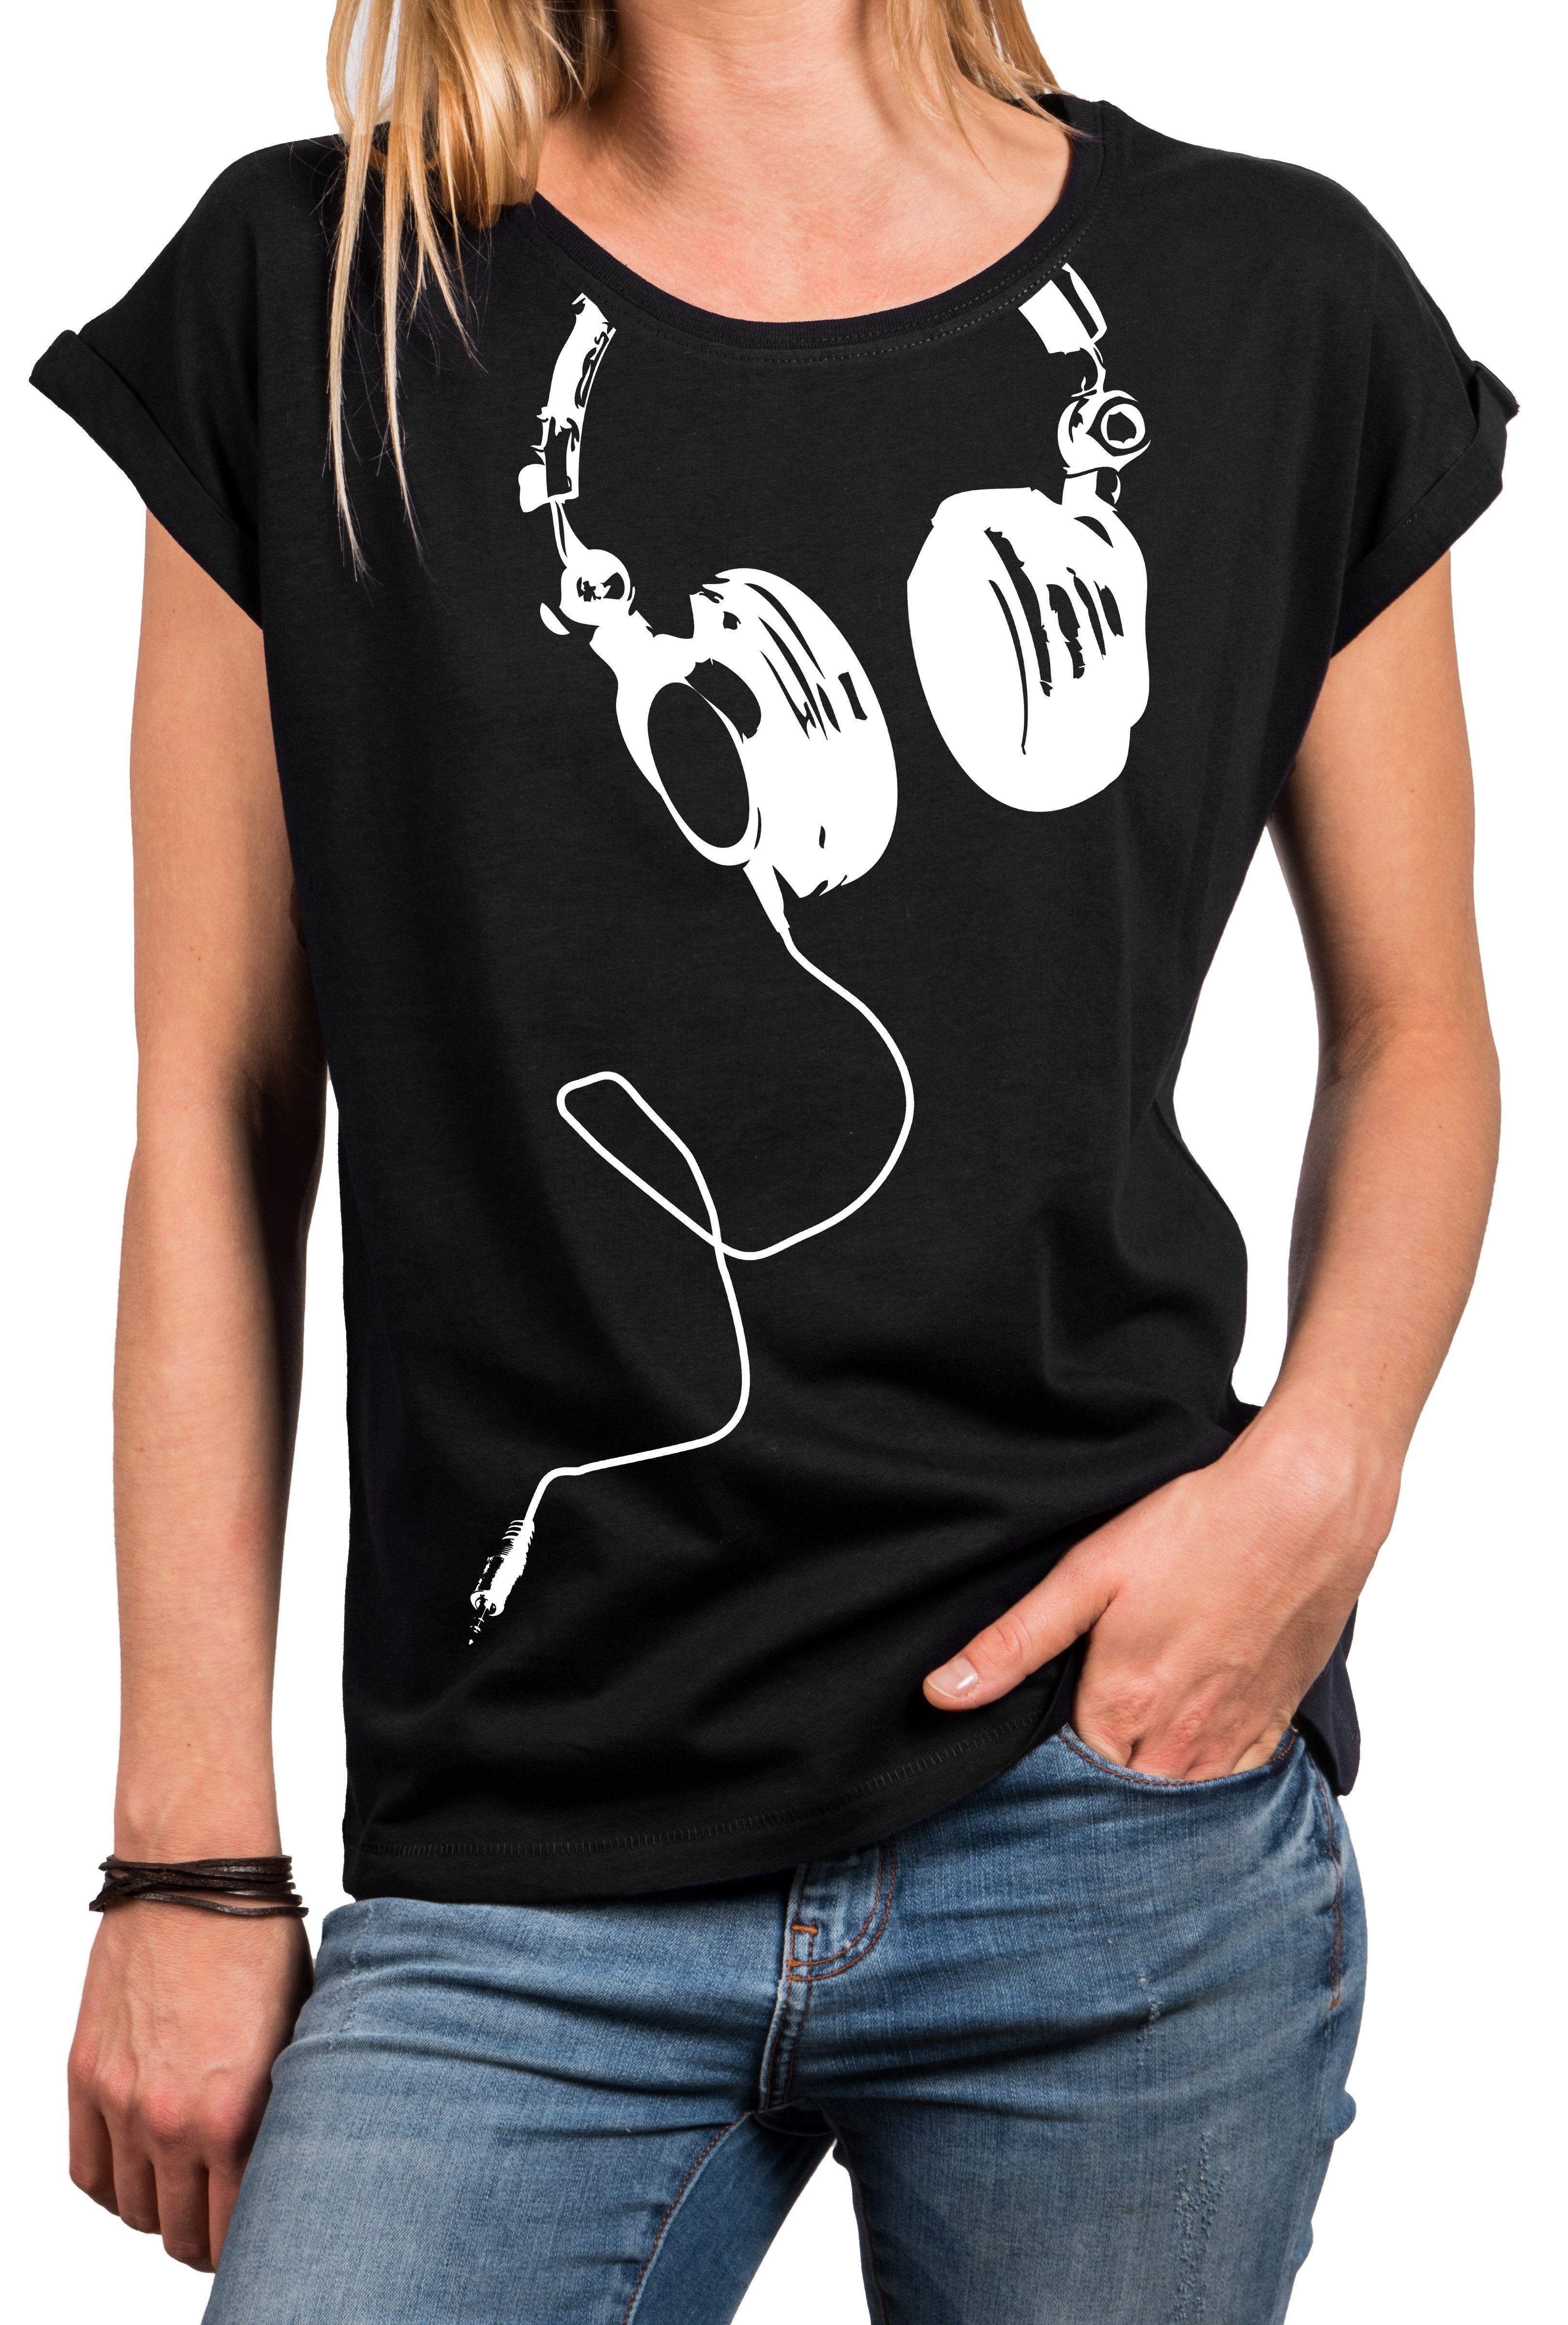 MAKAYA Oversize-Shirt Damen Top mit Print - Kopfhörer Aufdruck Basic Sommer Tunika Frauen (Oberteile, Baumwolle) Große Größen Schwarz